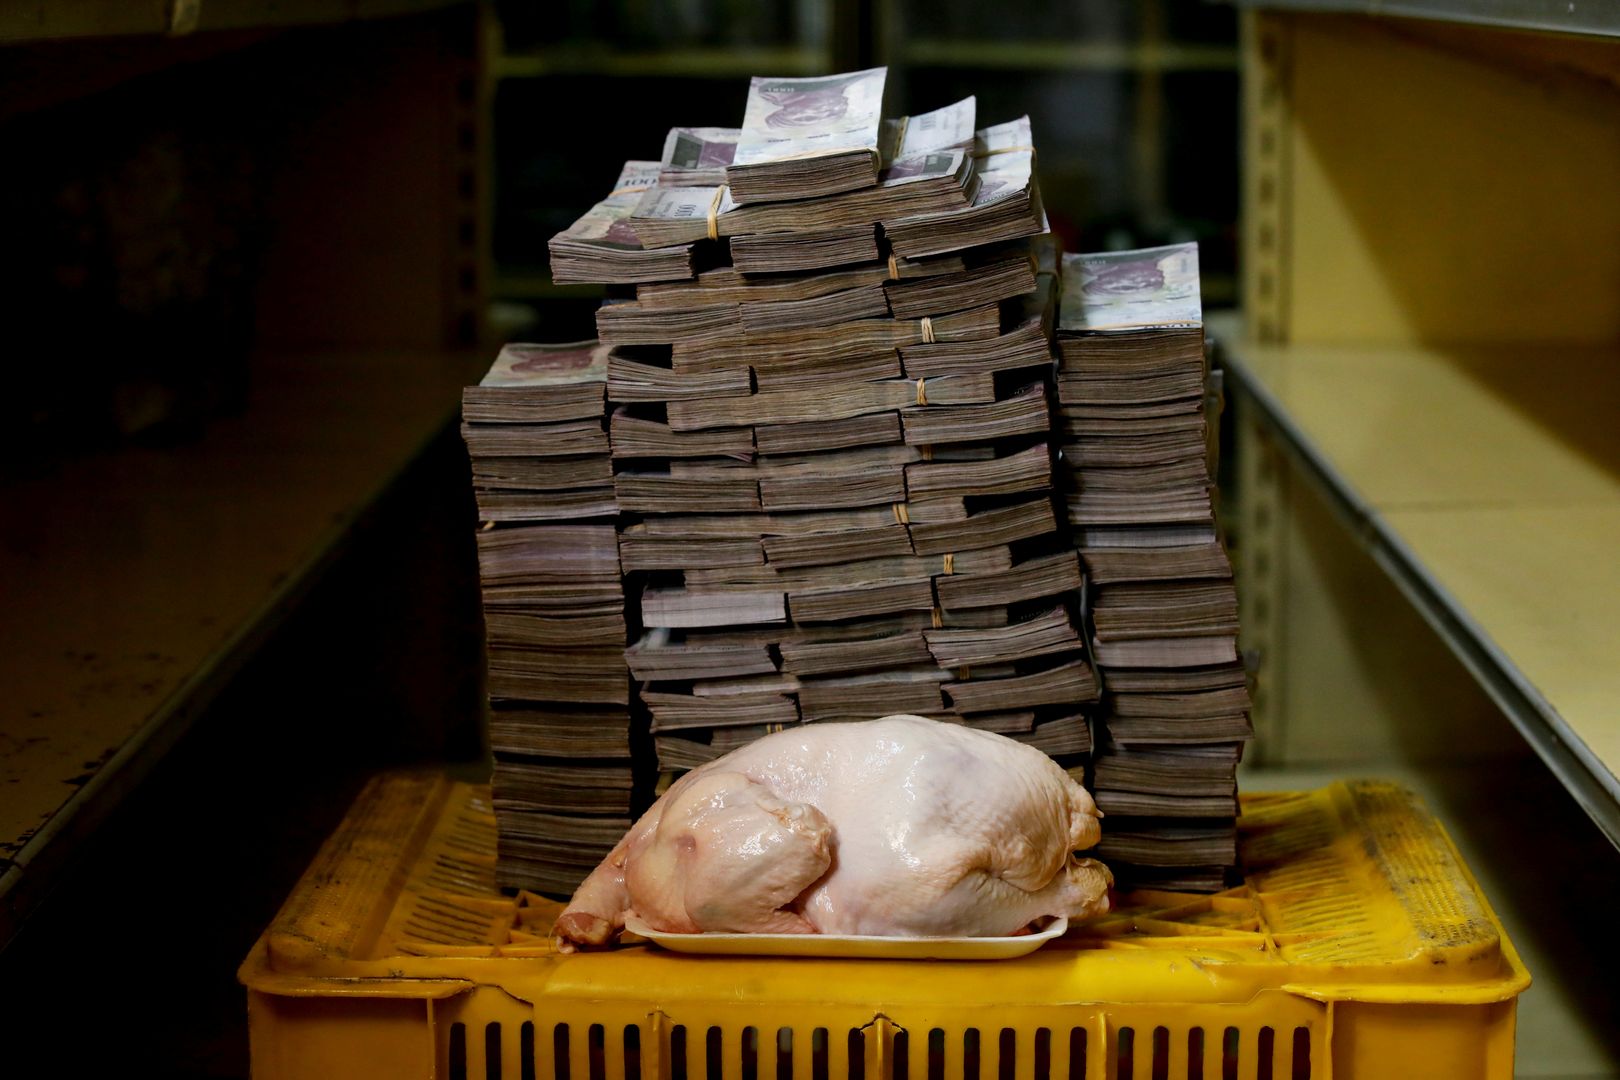 2,4 kg kurczaka = 14 600 000 boliwarów (8,17 zł)